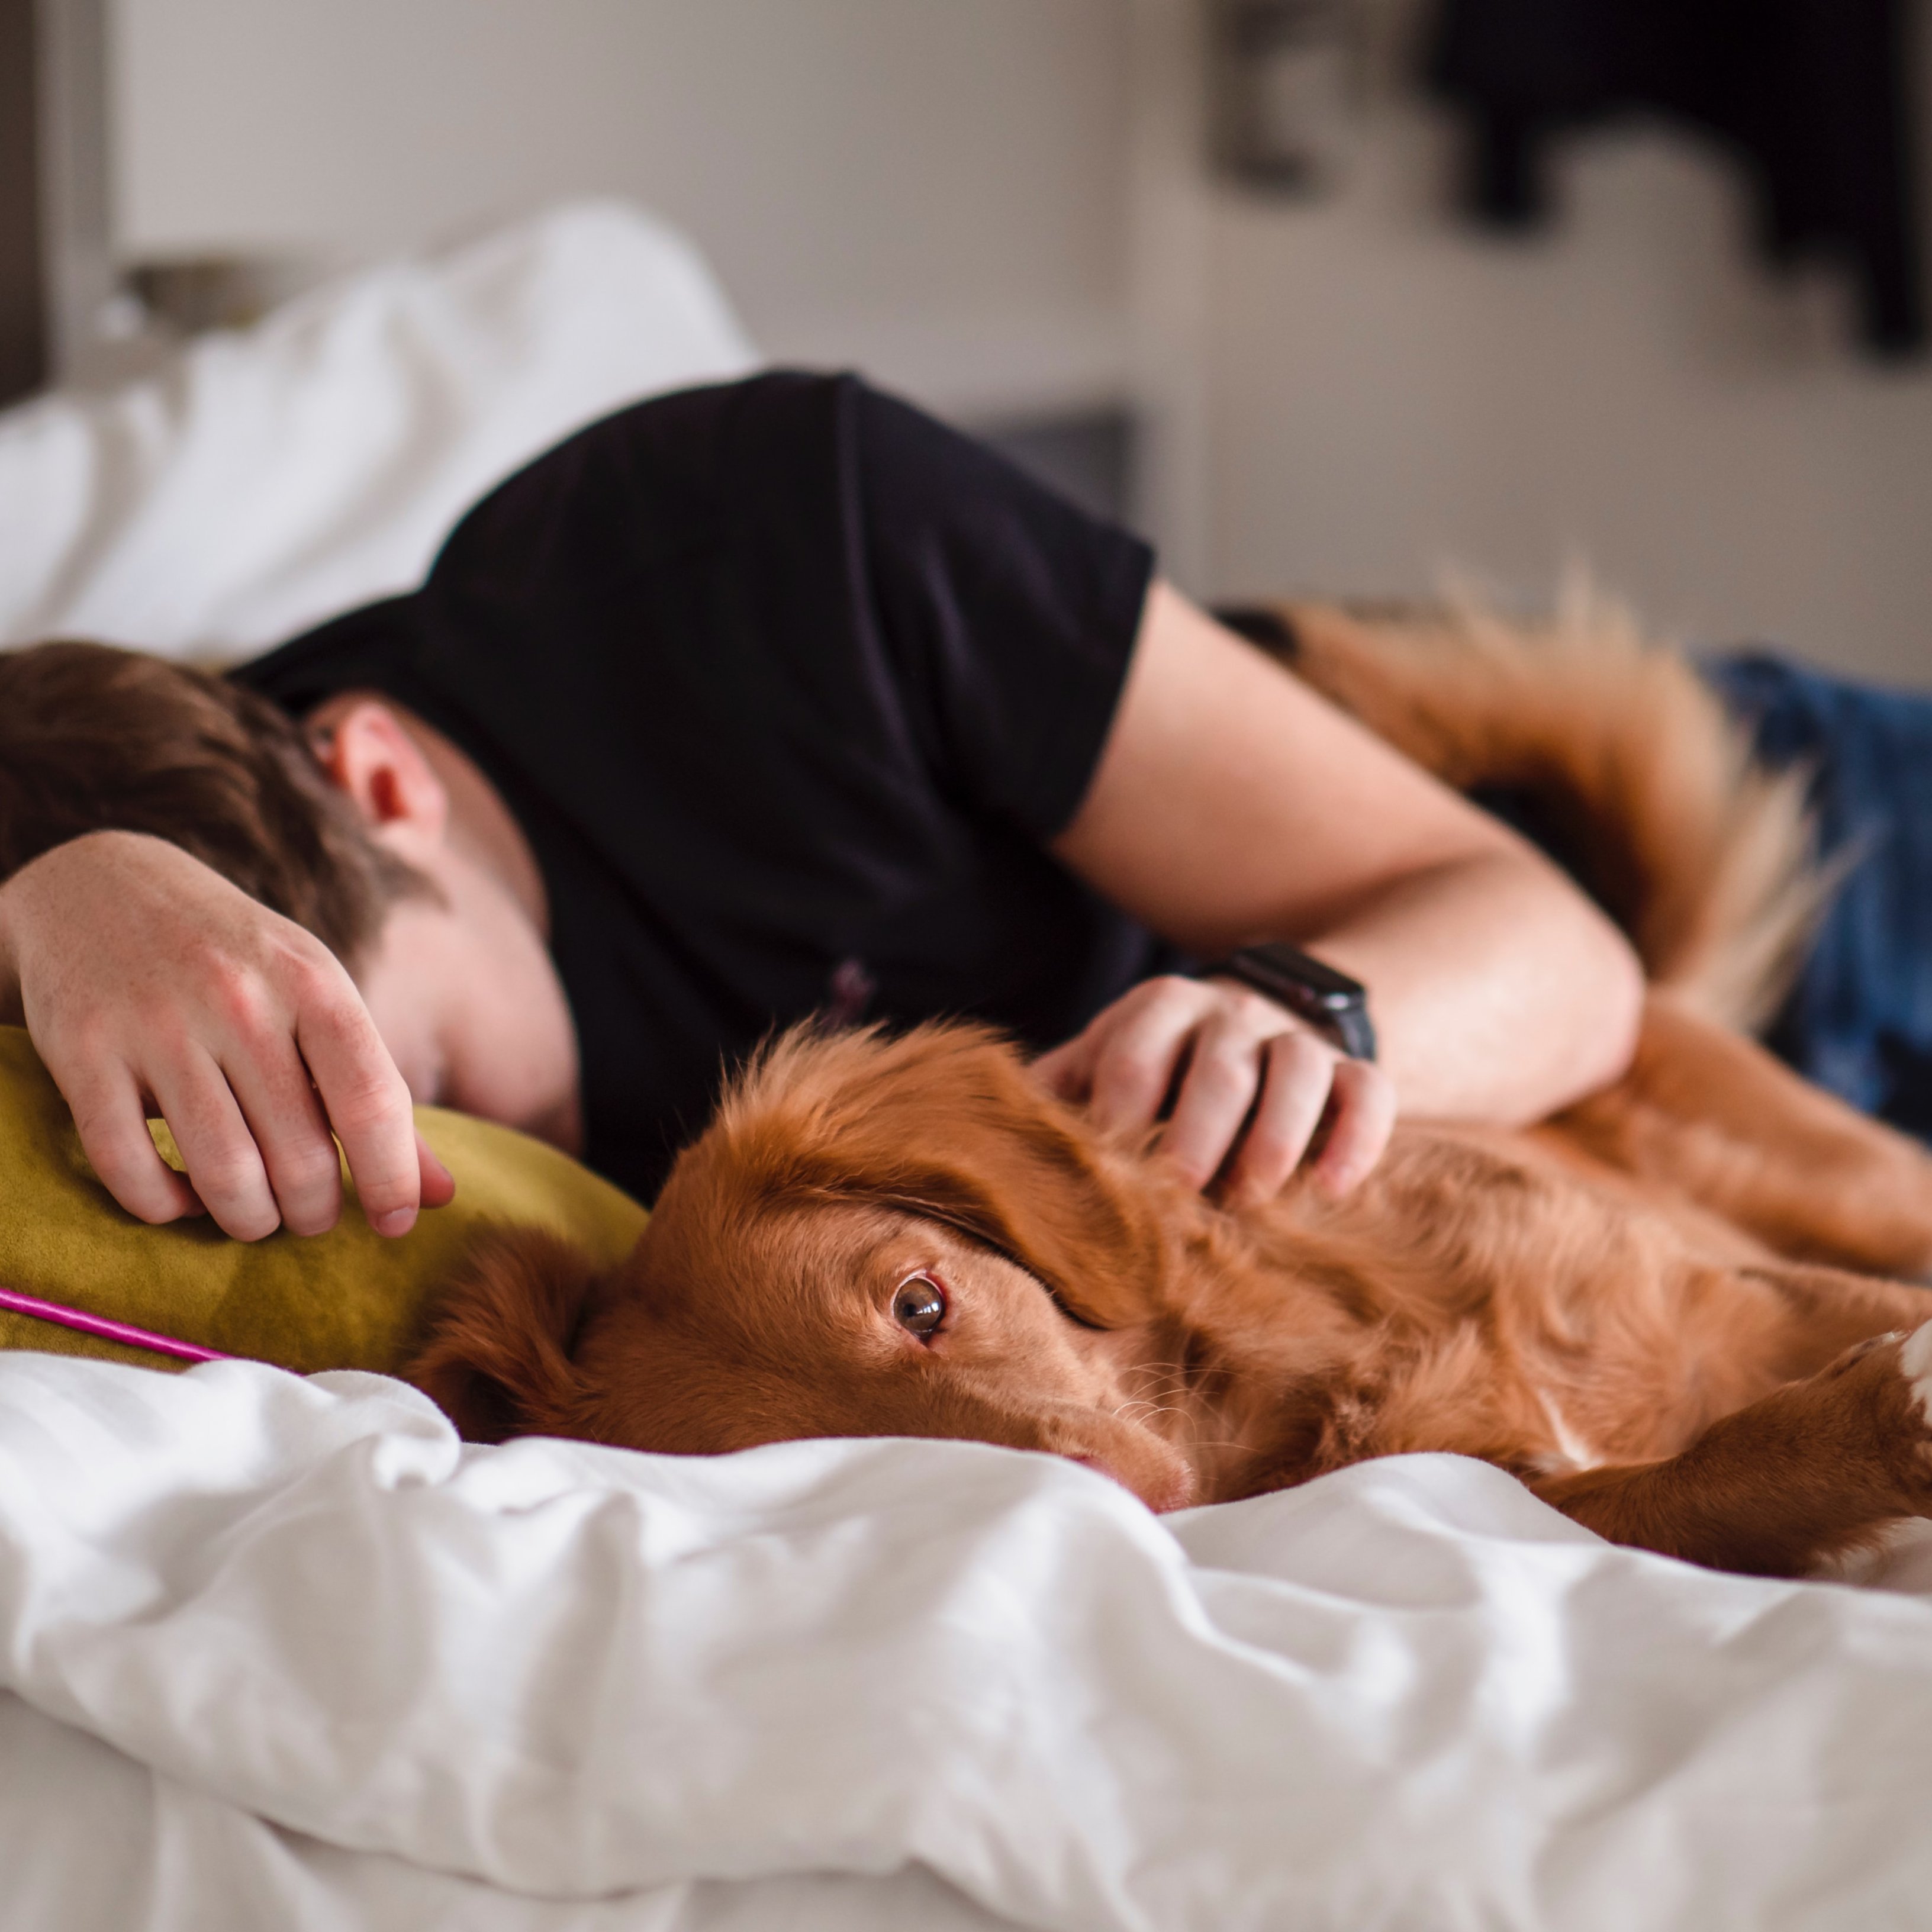 La calidad del sueño de los que duermen con su mascota es mejor